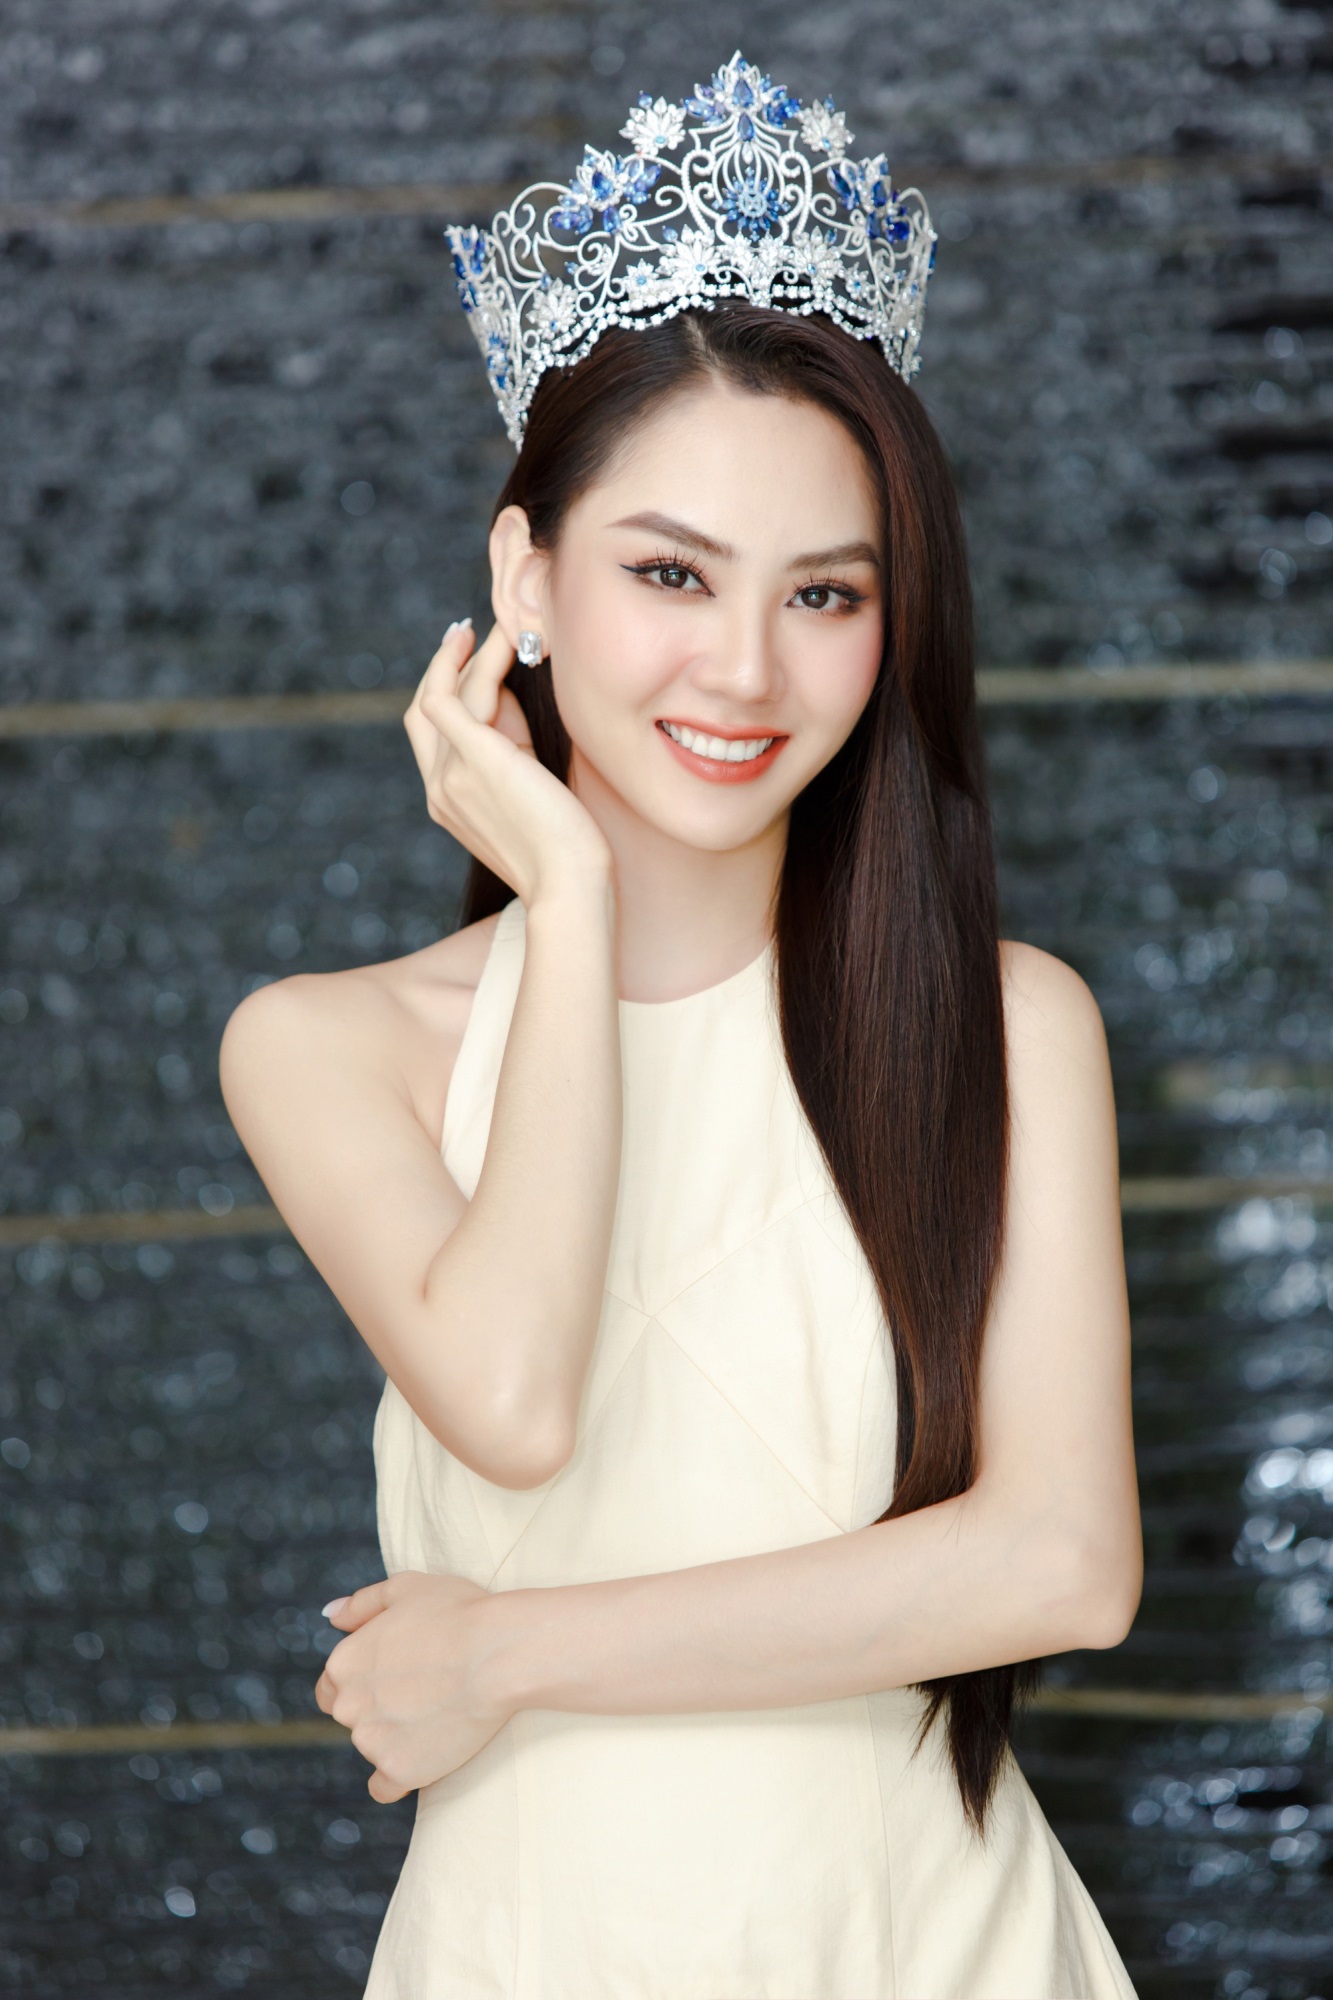 Hoa hậu Mai Phương đáp trả khi bị chê nhảy lố lăng phản cảm, 'hình ảnh vượt chuẩn mực hoa hậu' - Ảnh 2